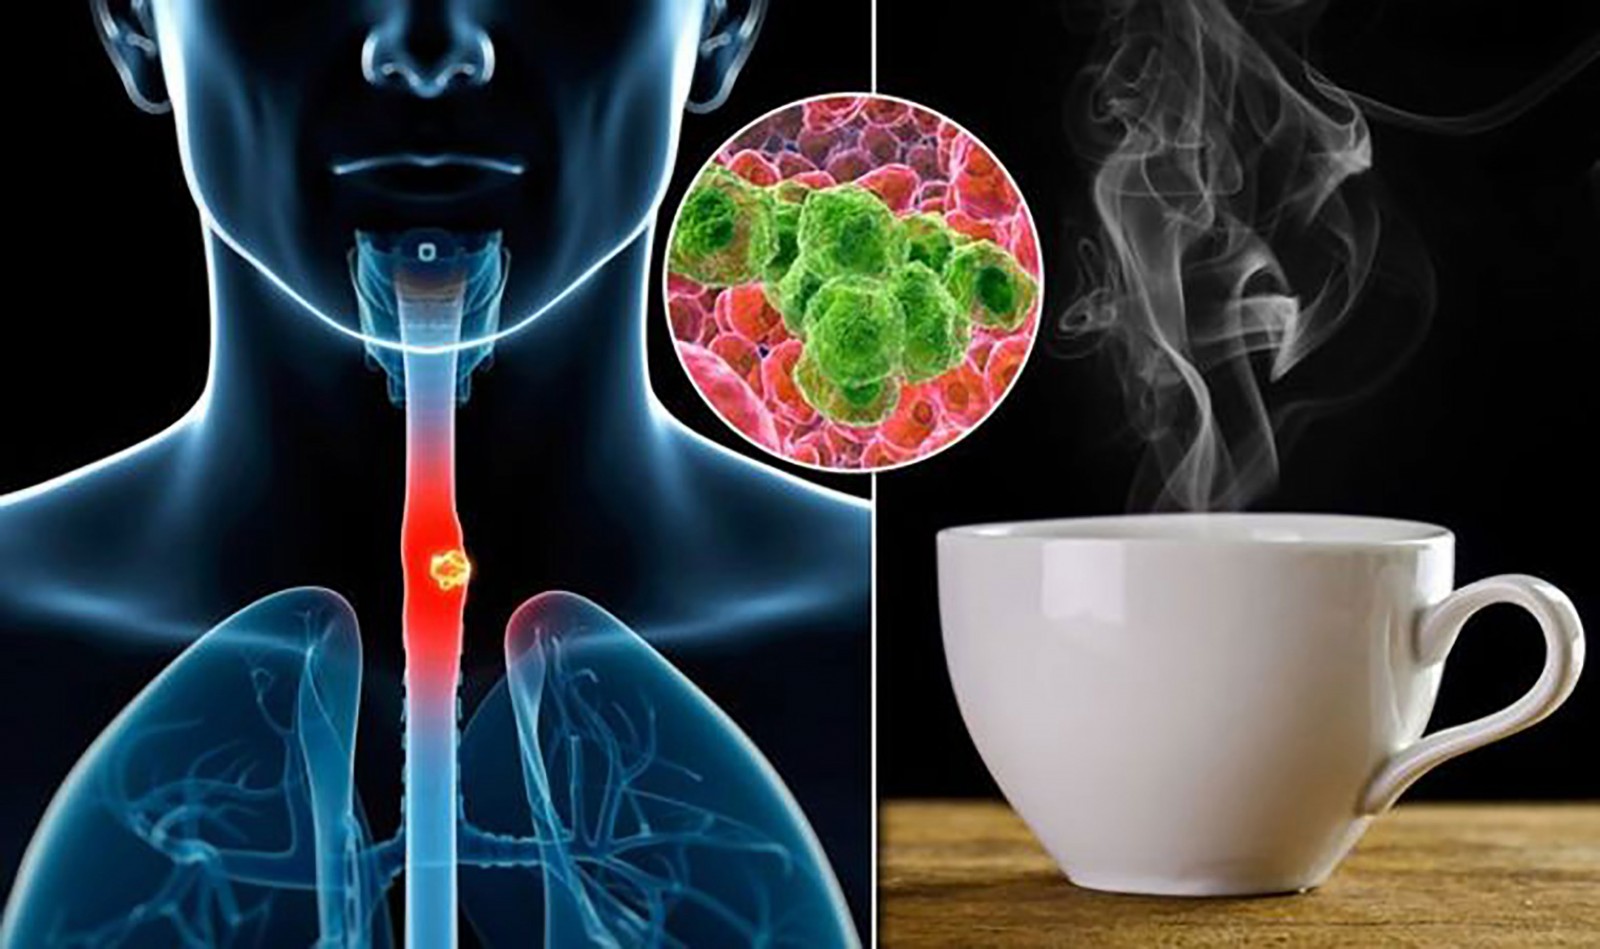 Uống trà quá nóng dễ gây tổn thương niêm mạc bên trong thực quản và cổ họng, làm tăng nguy cơ mắc ung thư thực quản. Ảnh: Daily Express